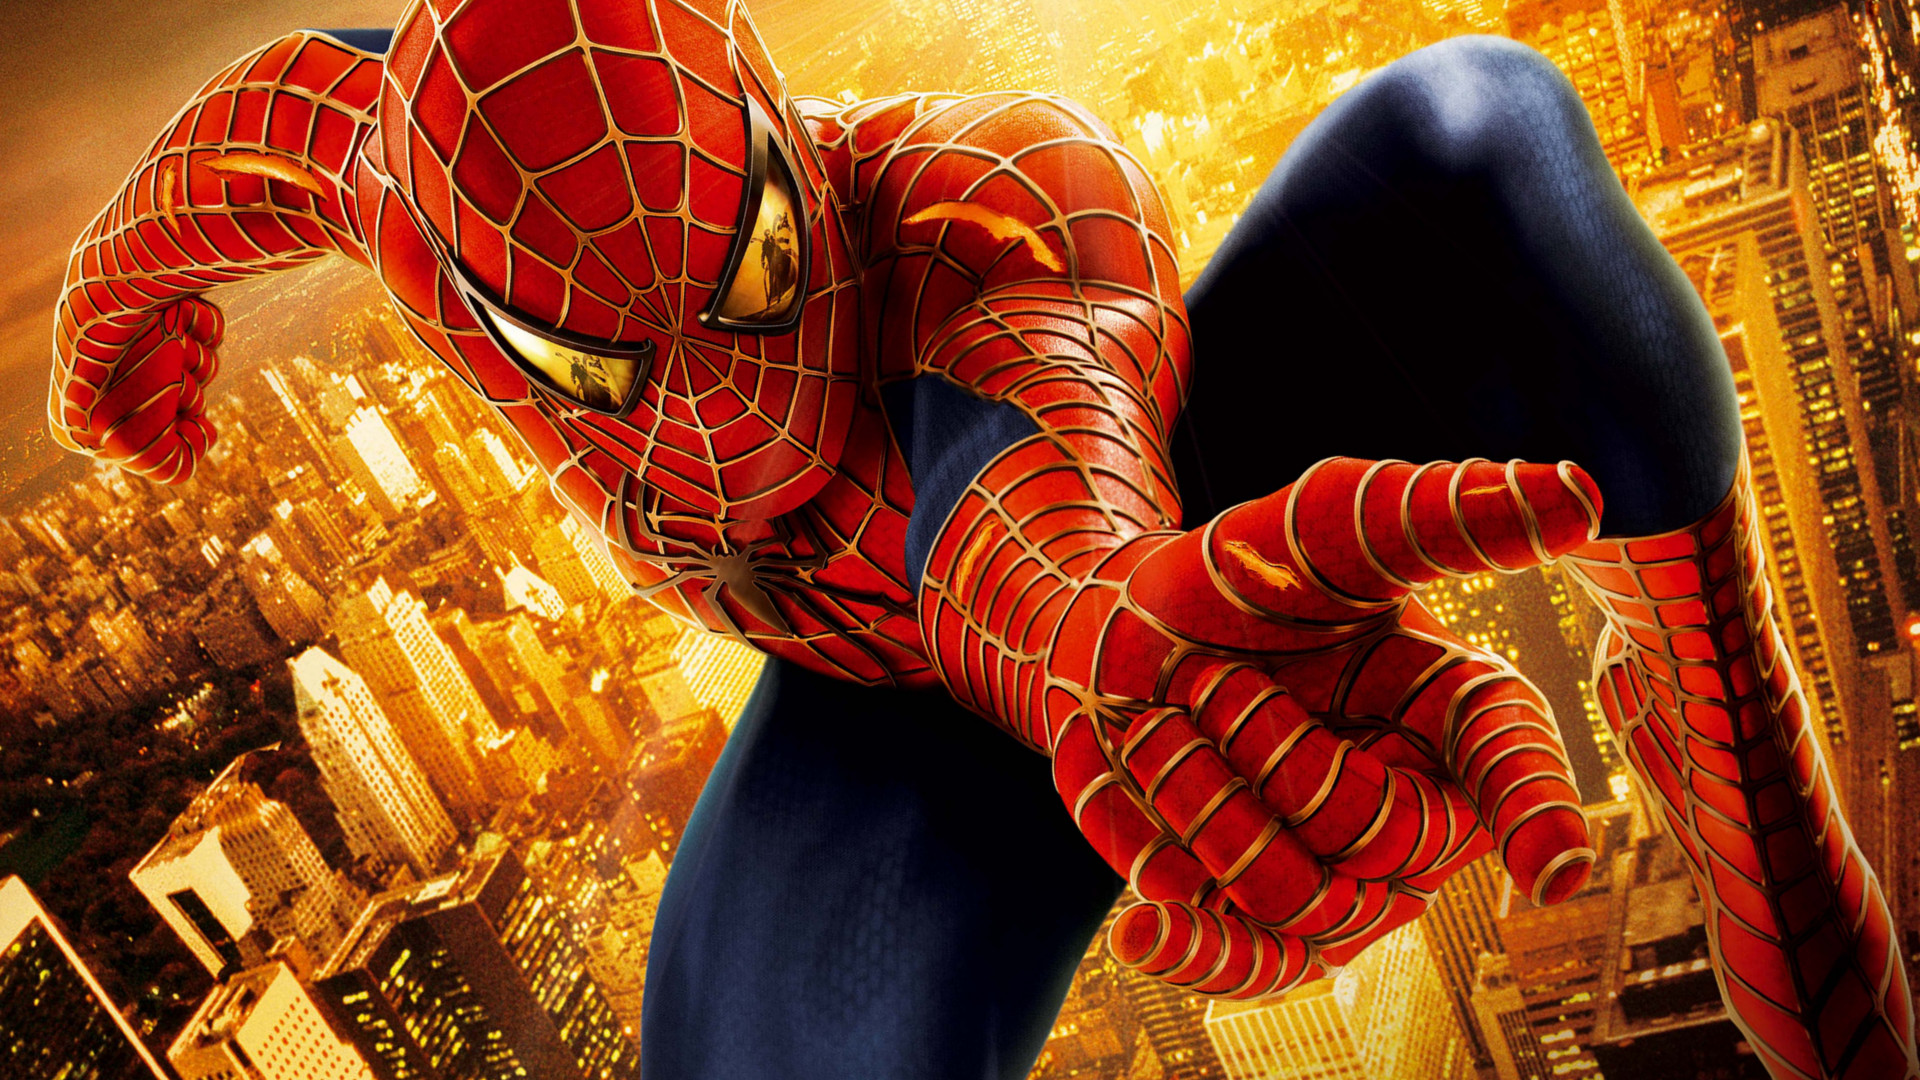 spider man 2 fond d'écran,homme araignée,personnage fictif,super héros,oeuvre de cg,fiction